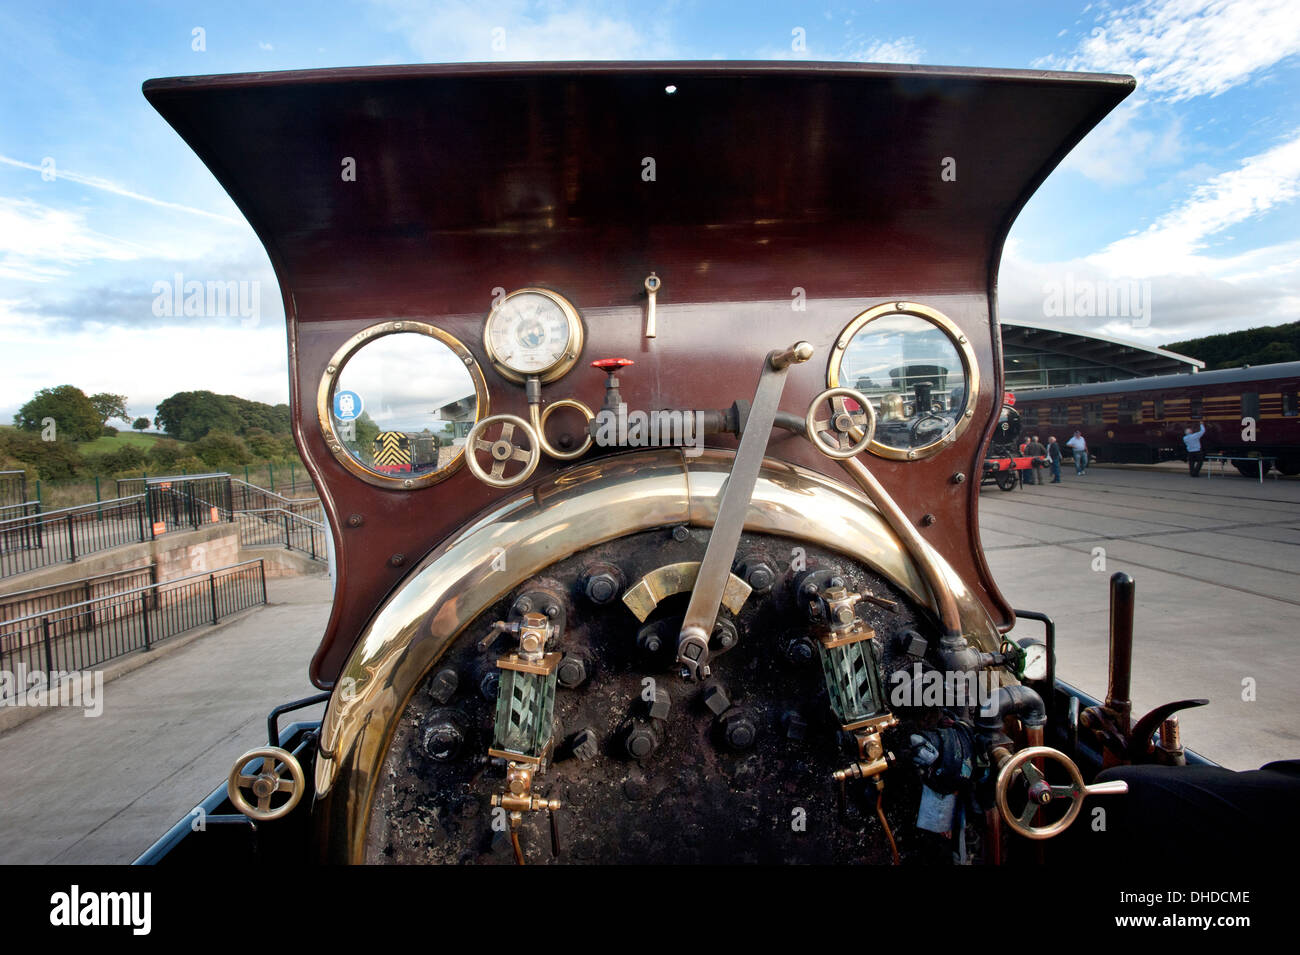 Die Fahrerkabine des Dampfs Lokomotive Furness Railway Nummer 20, Großbritanniens älteste funktionierende Normalspur Dampflokomotive im National Railway Museum. Shildon Stockfoto